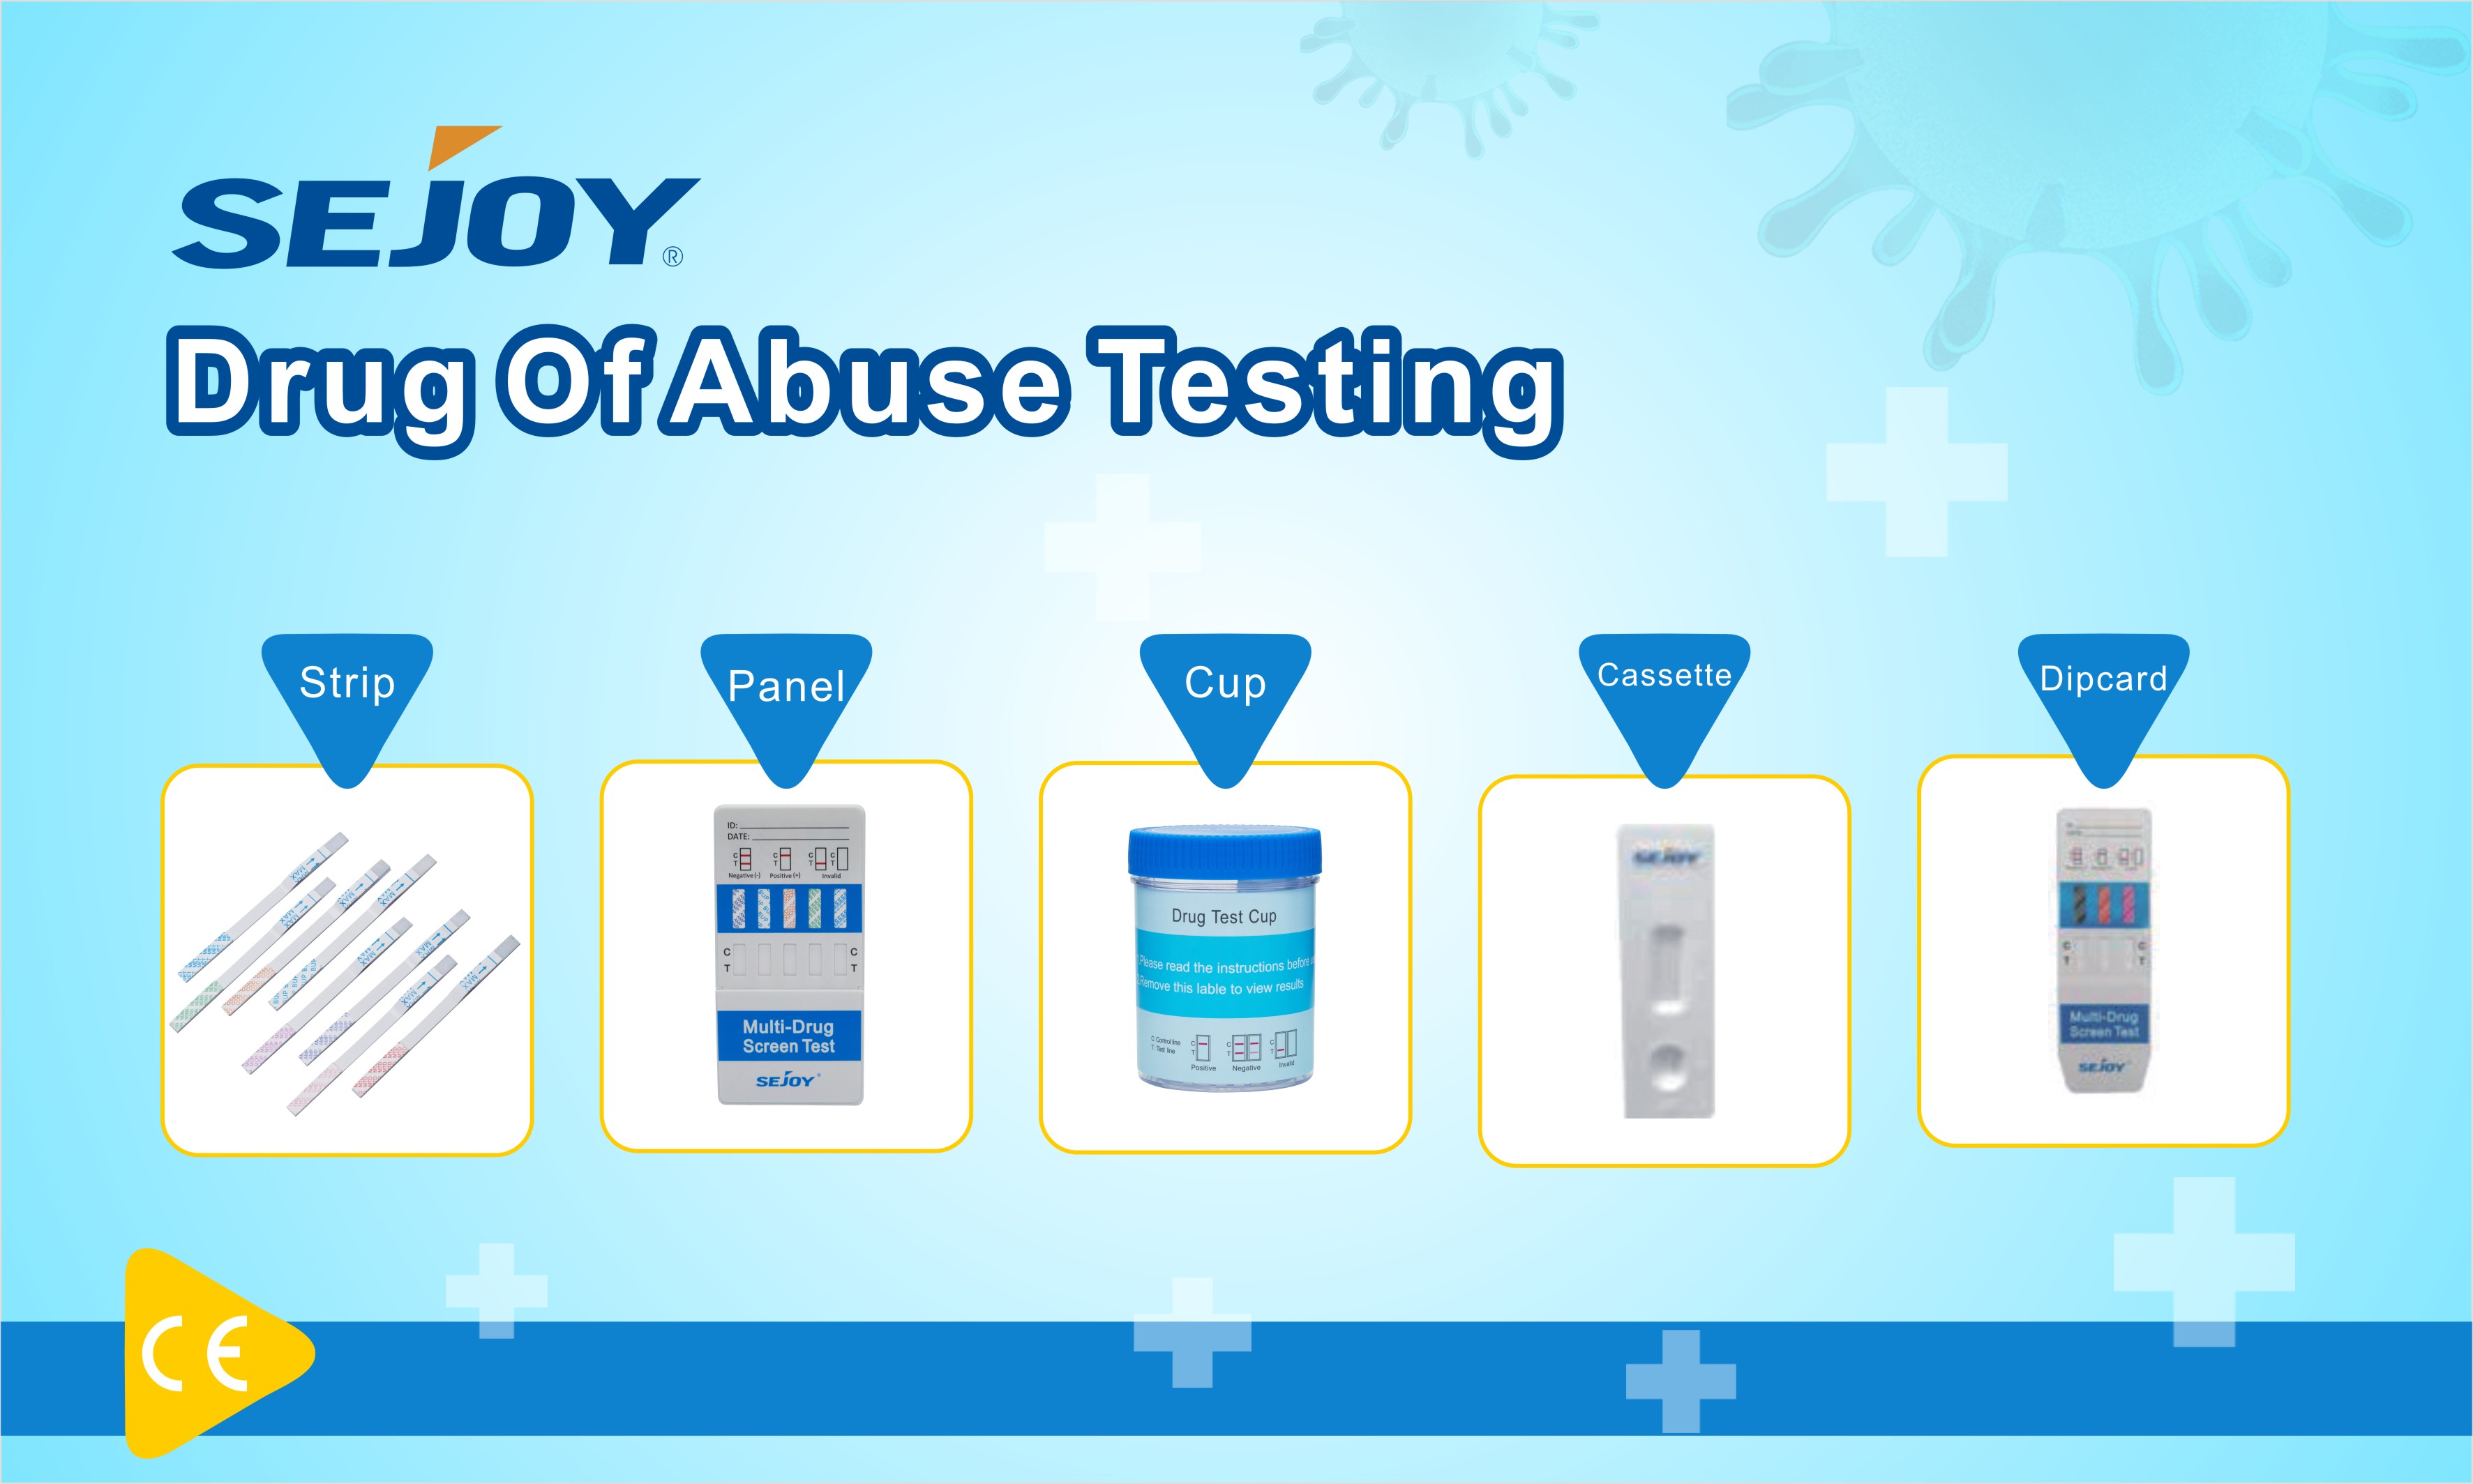 https://www.sejoy.com/drug-of-abuse-test-product/